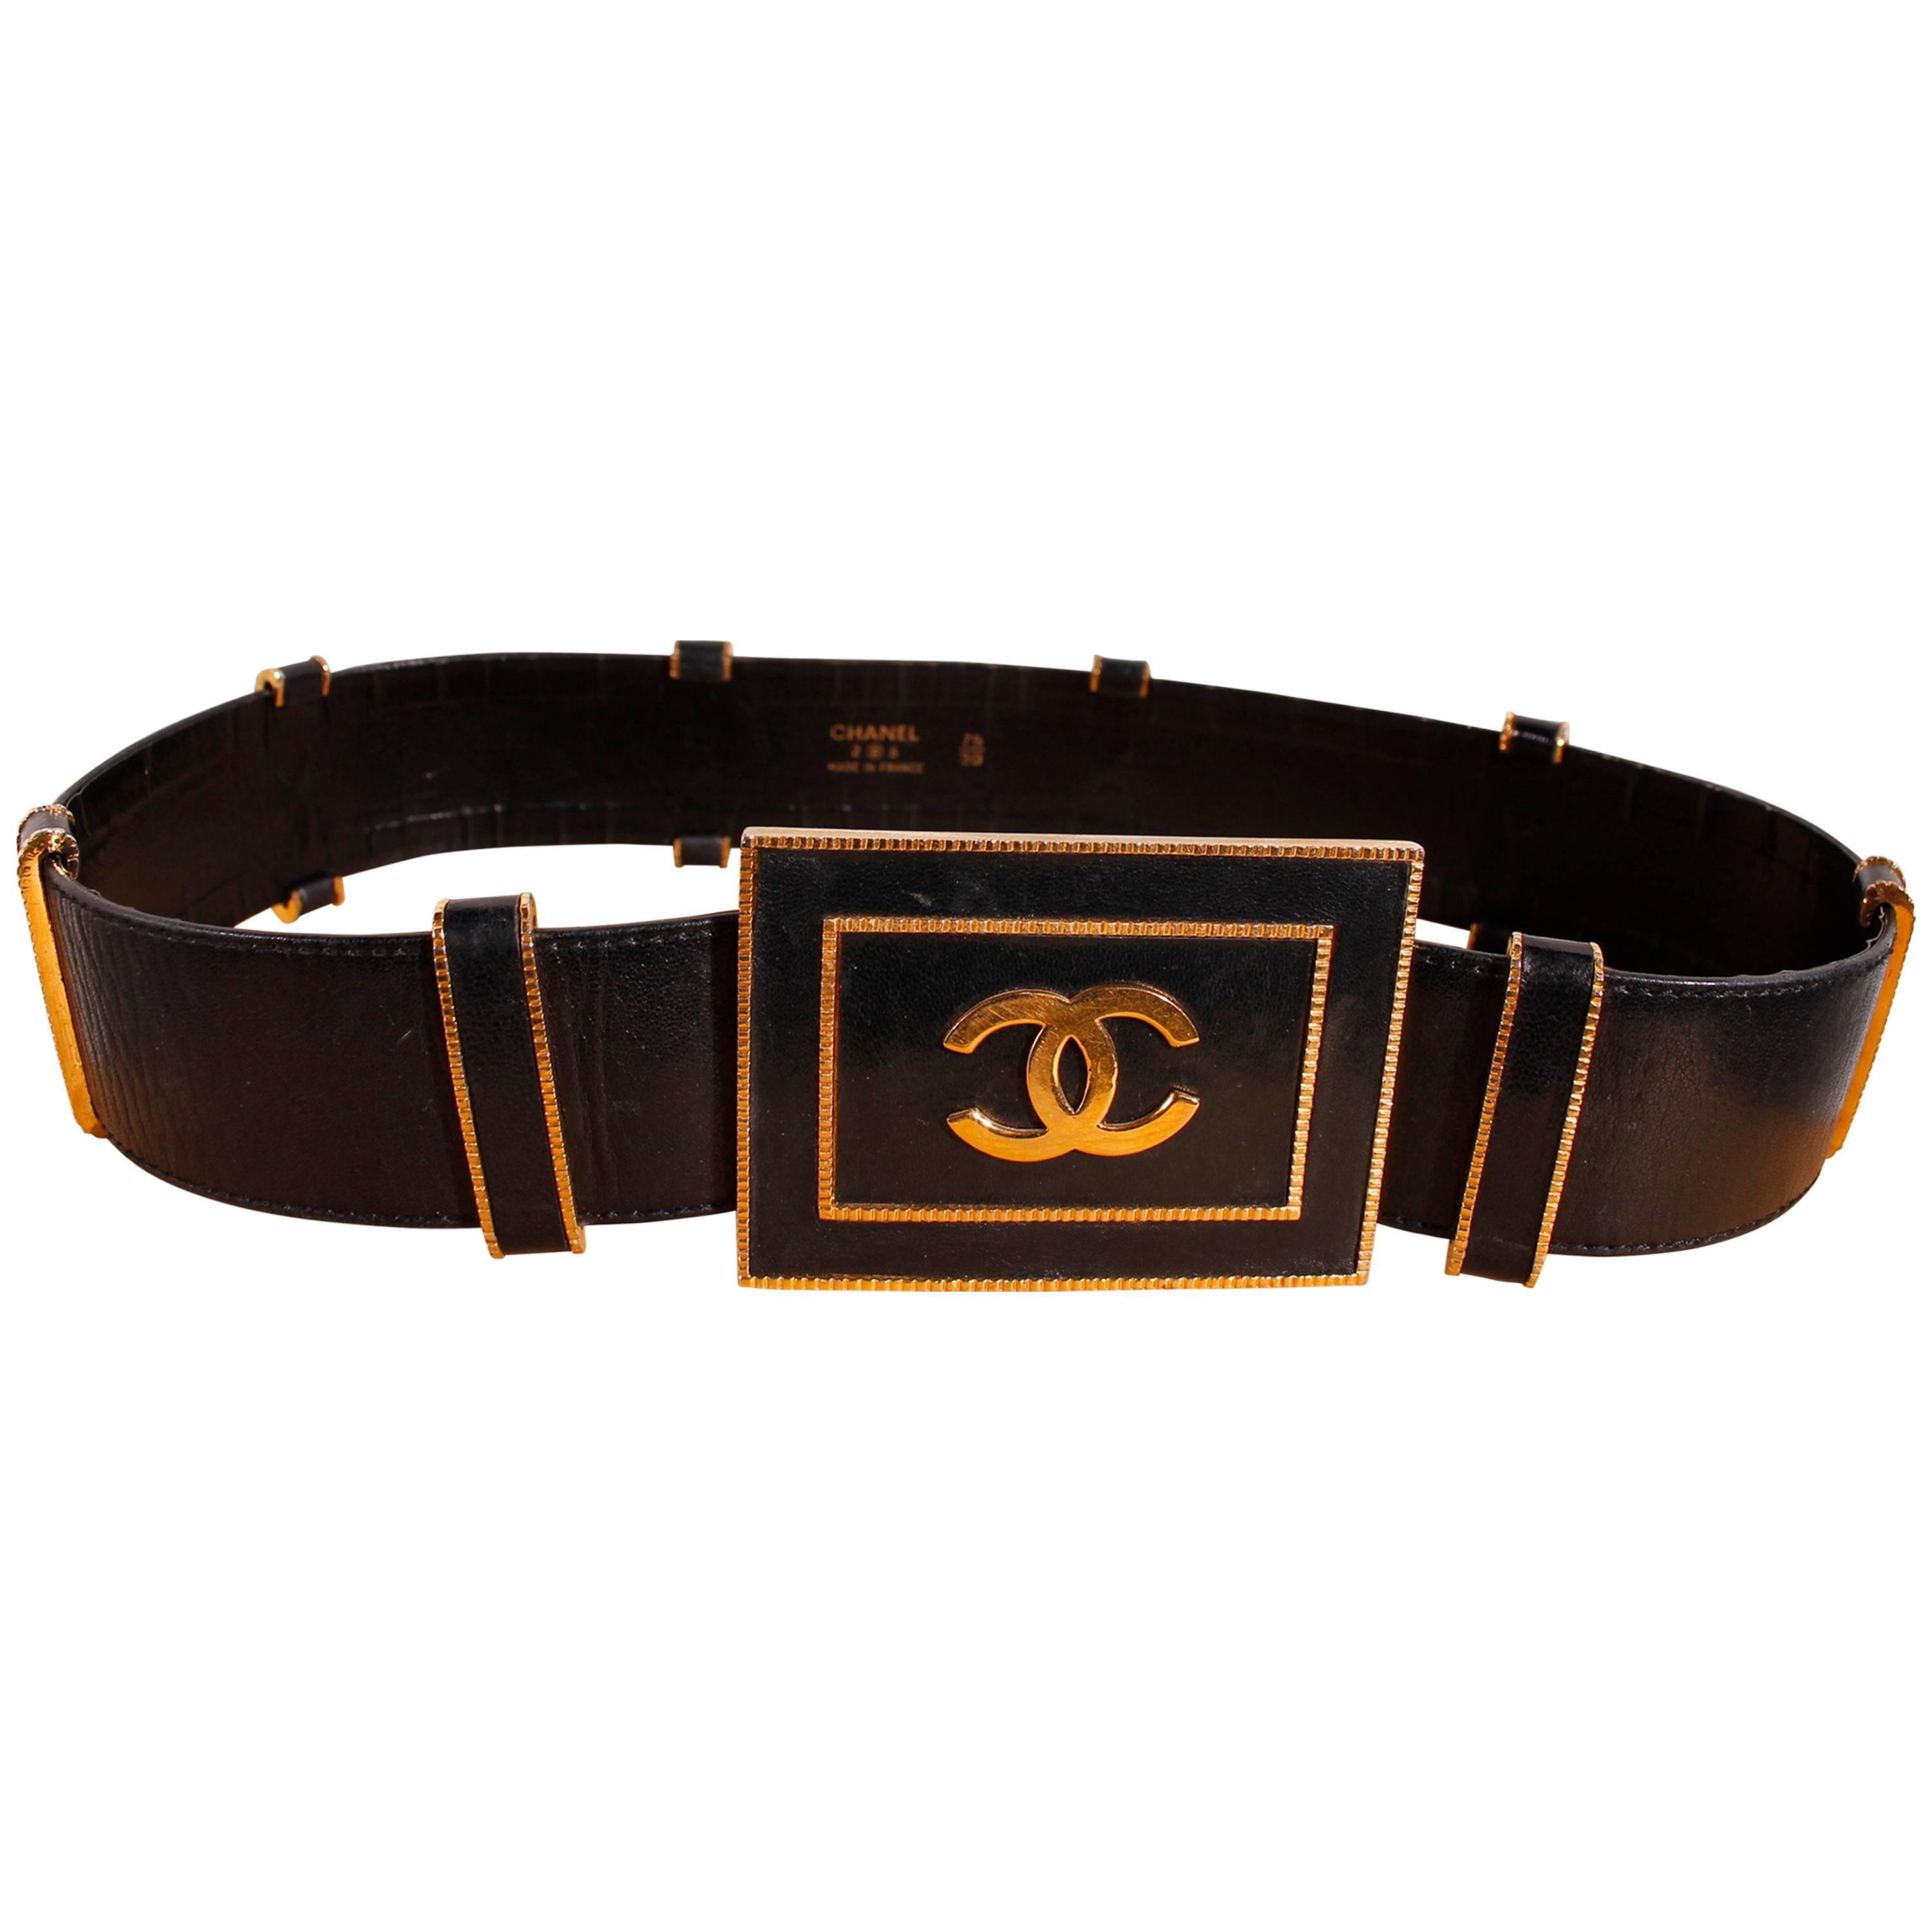 80's Vintage Chanel Belt - Black Leather